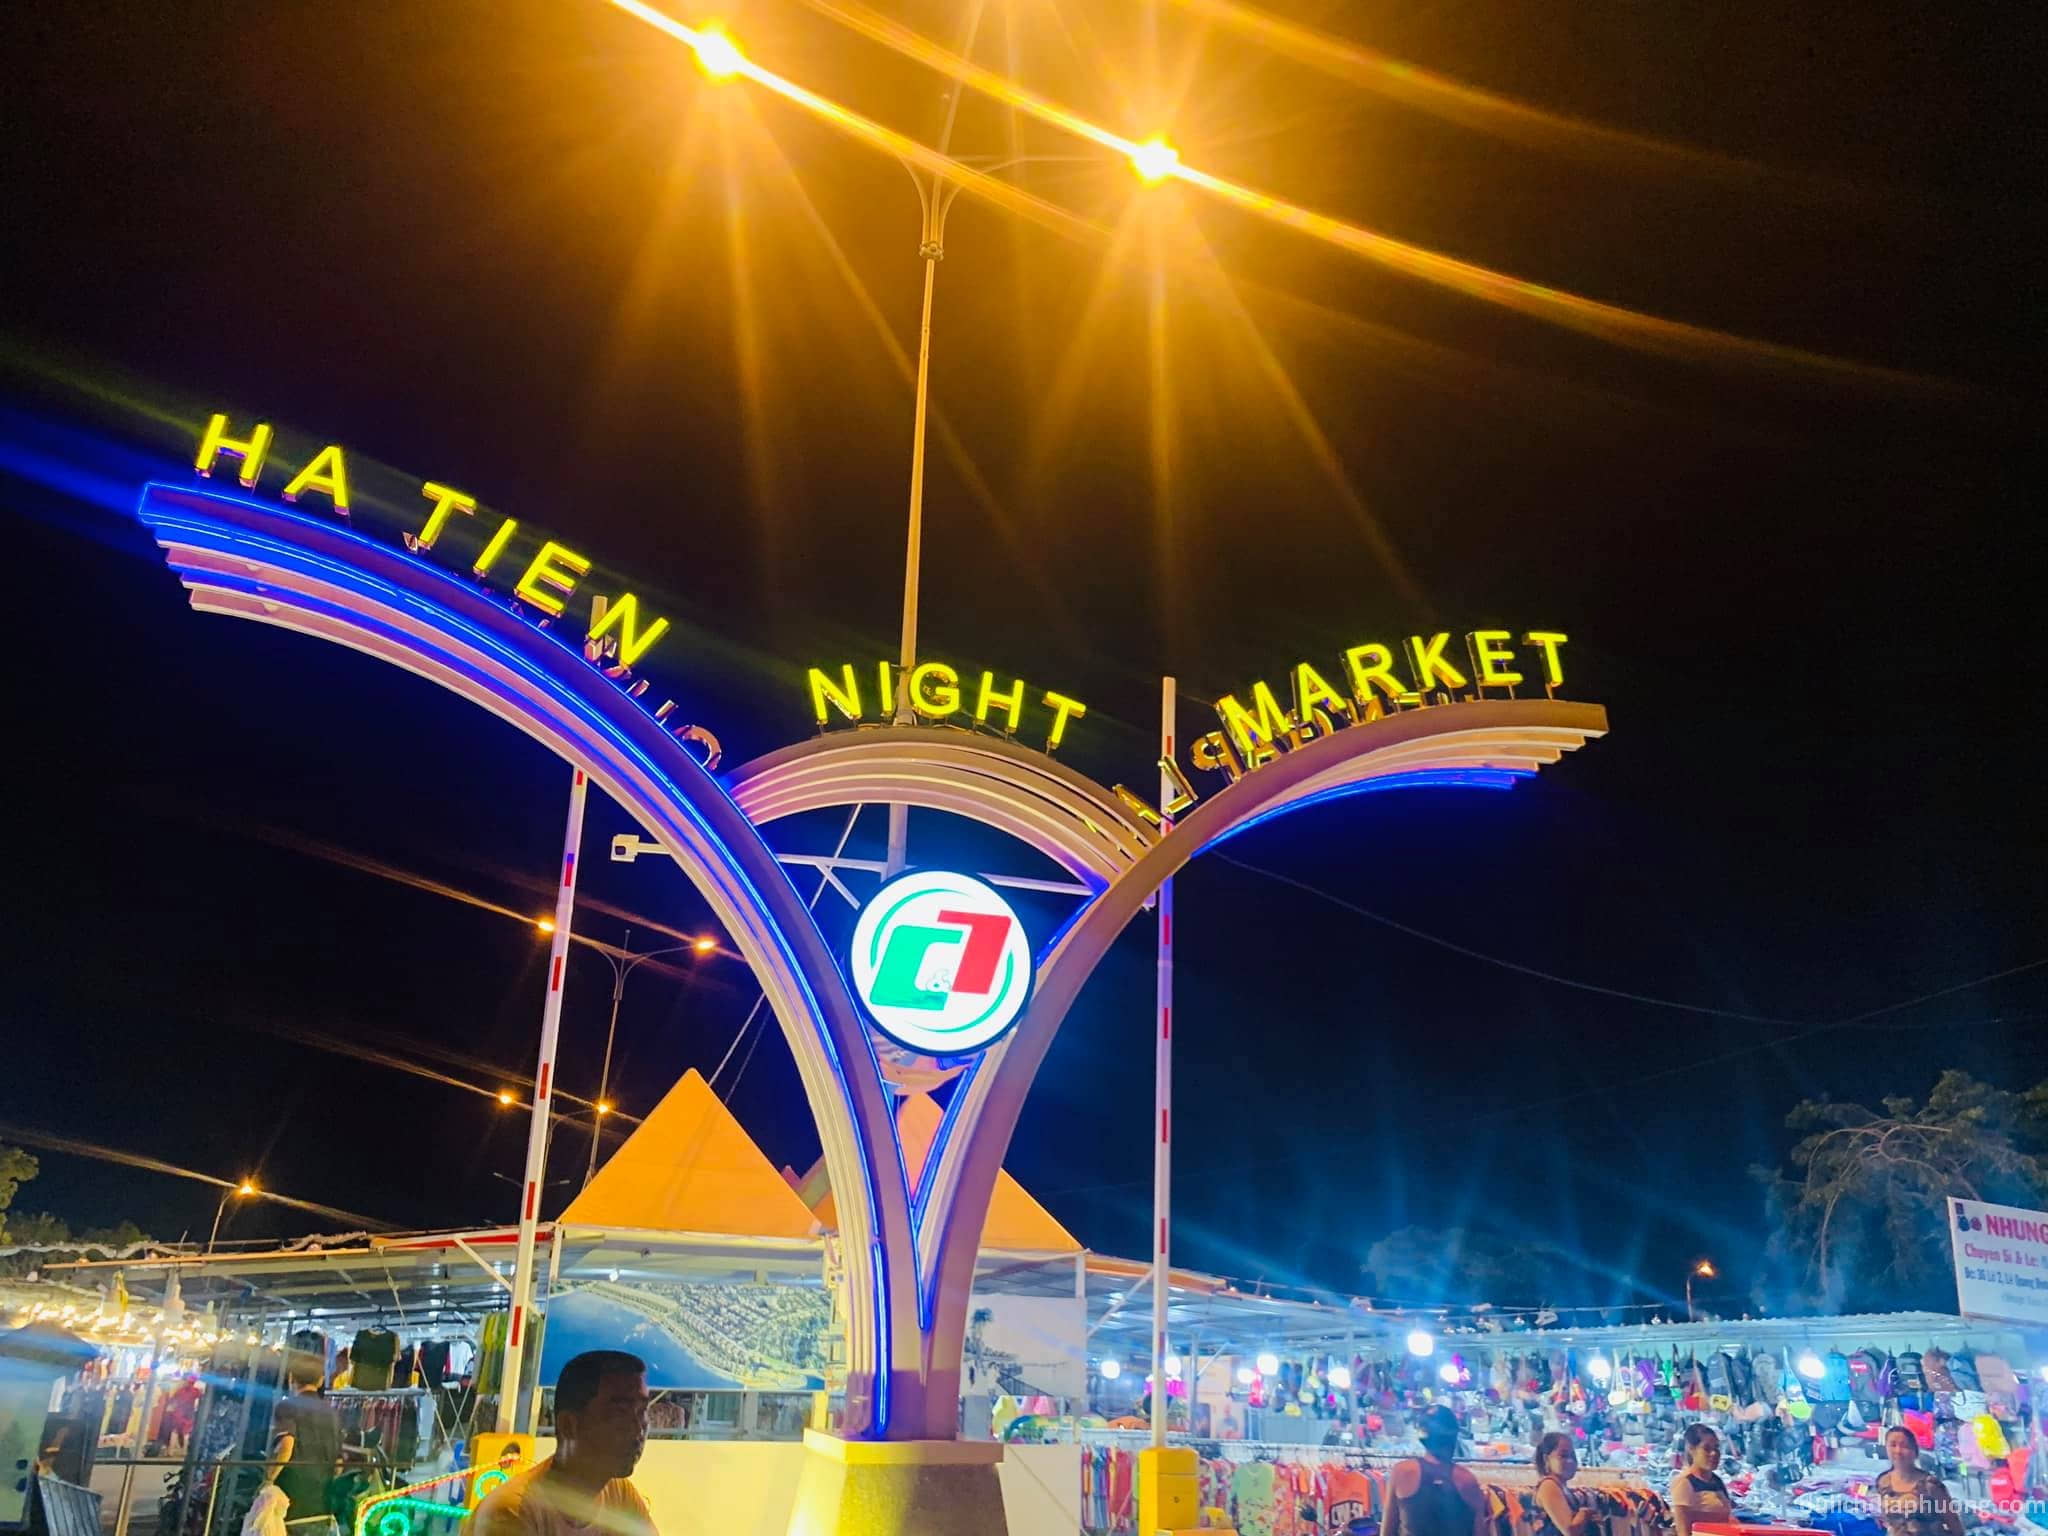 Chợ đêm Hà Tiên - Một trong những điểm check-in sau khi mua vé tàu cao tốc Hà Tiên Tiên Hải